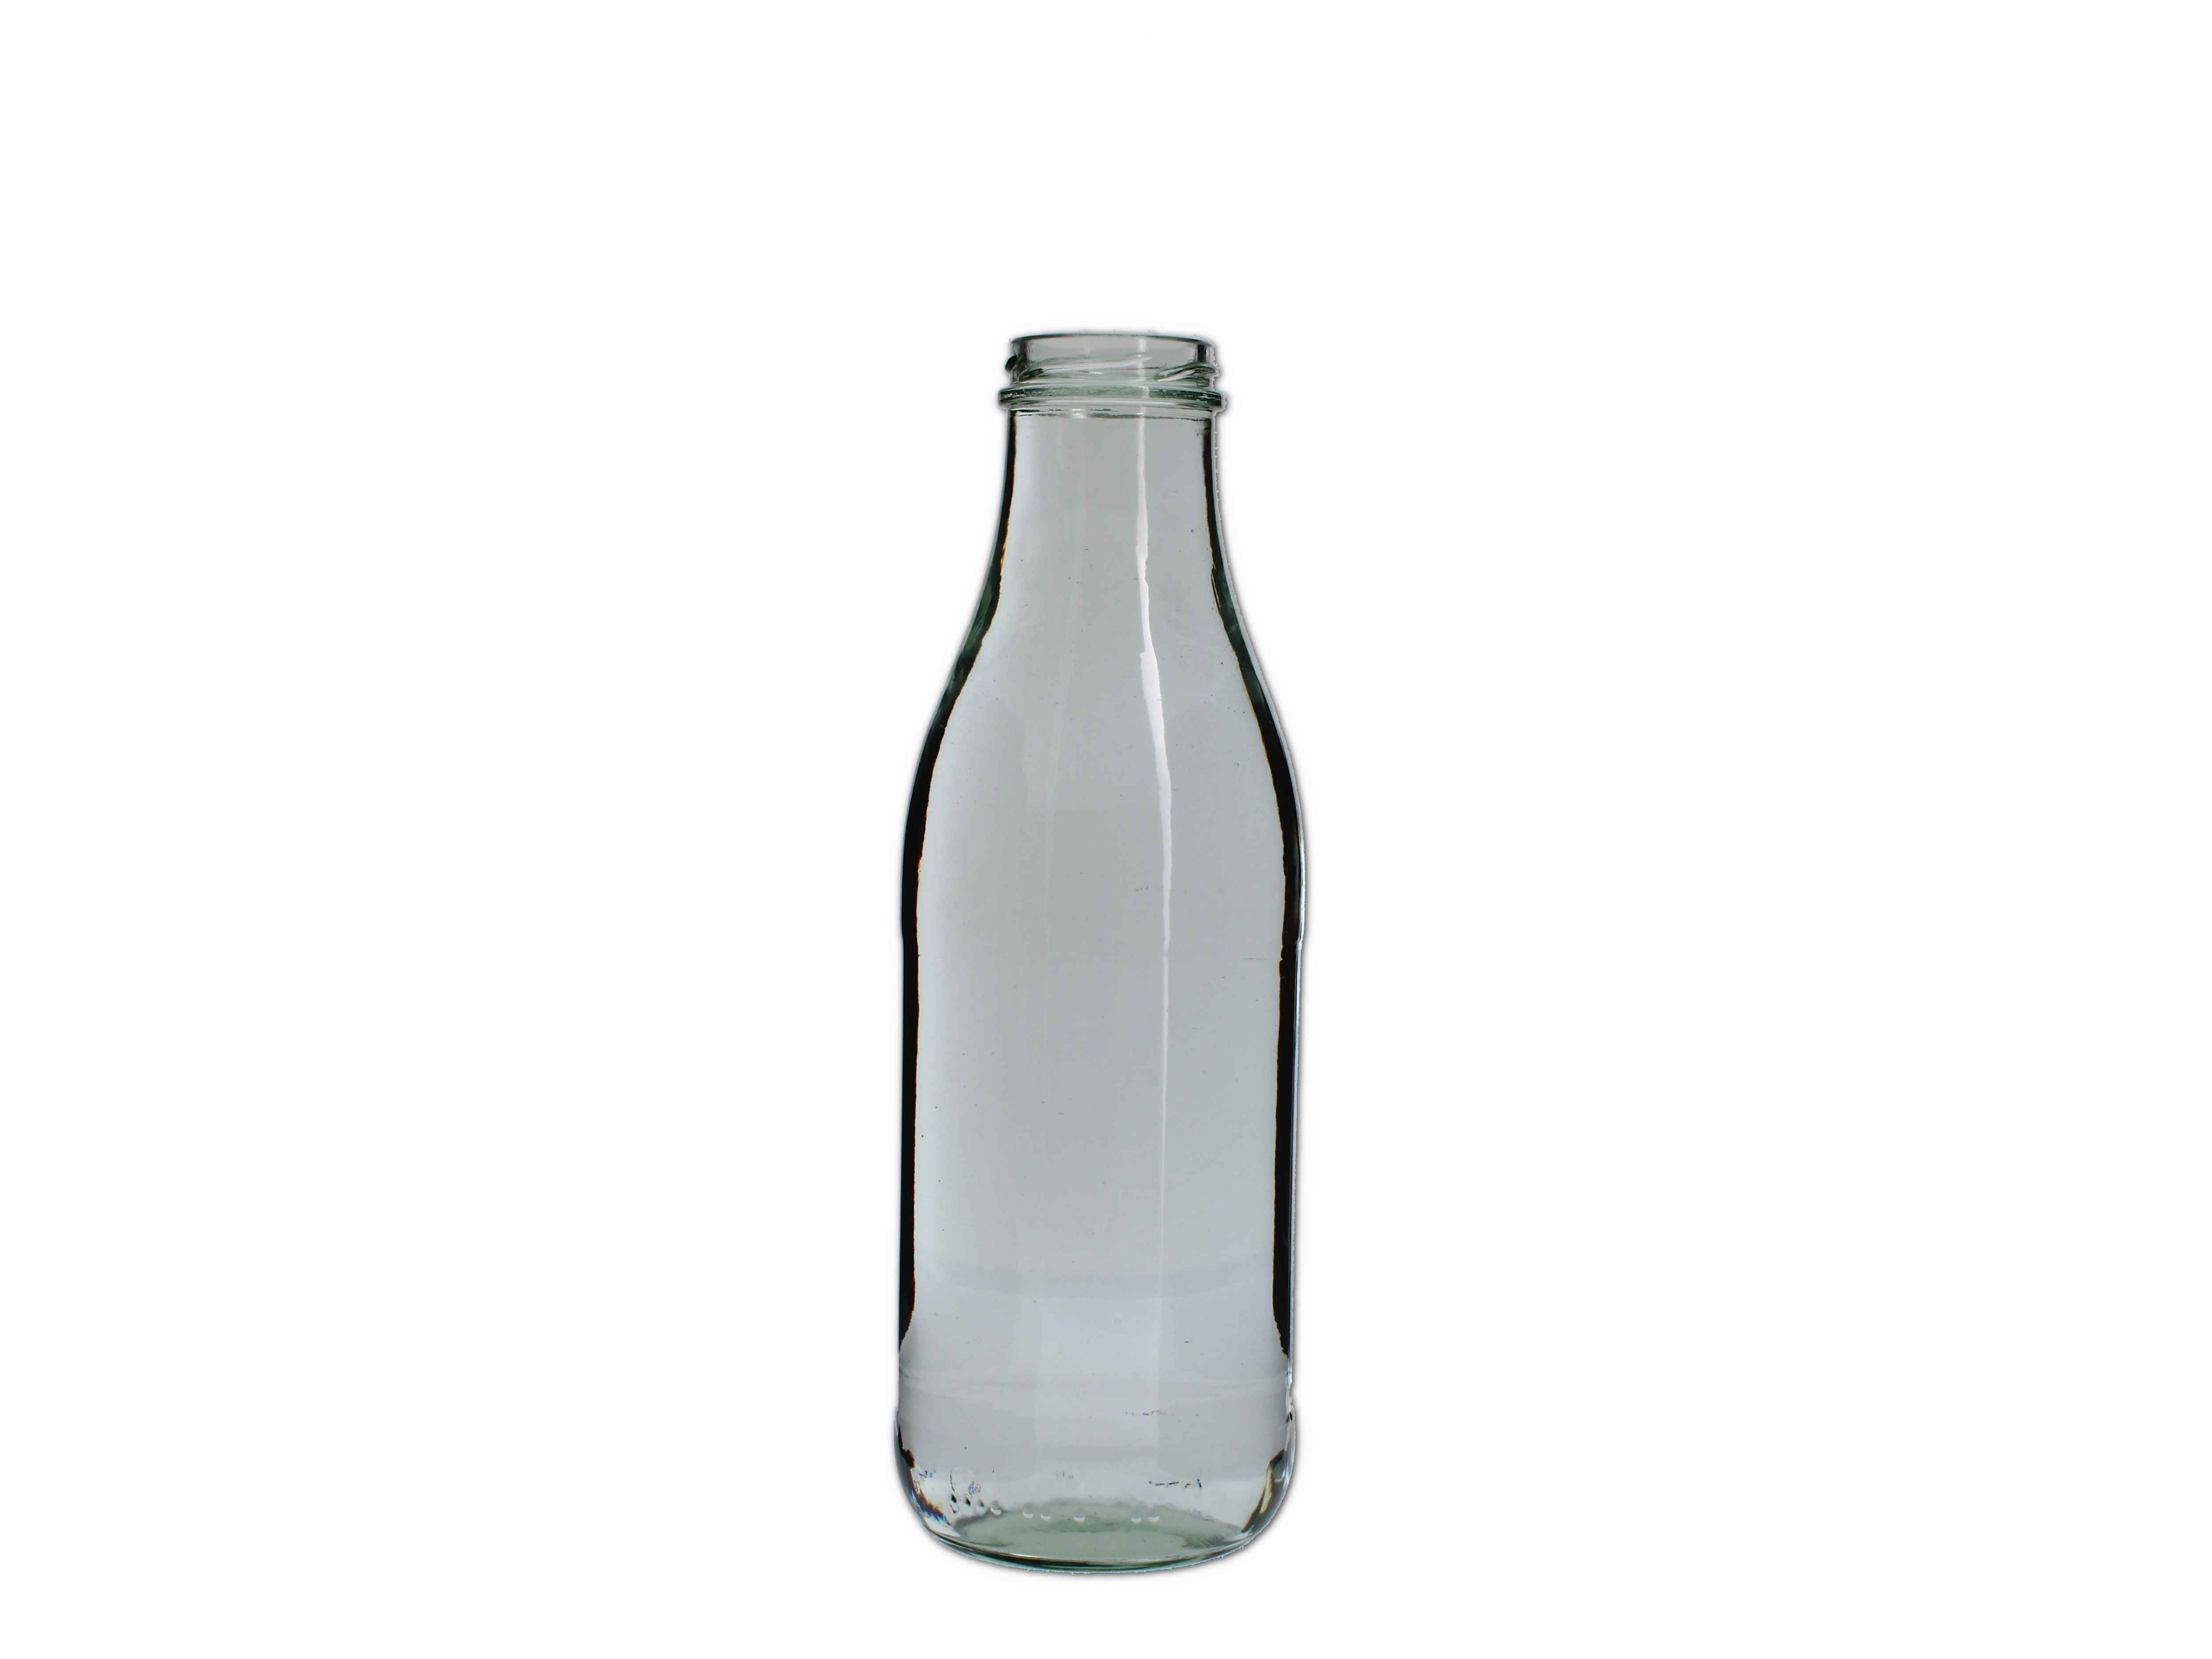    Saftflasche rund 1000ml (TO48) - Abverkaufspreis